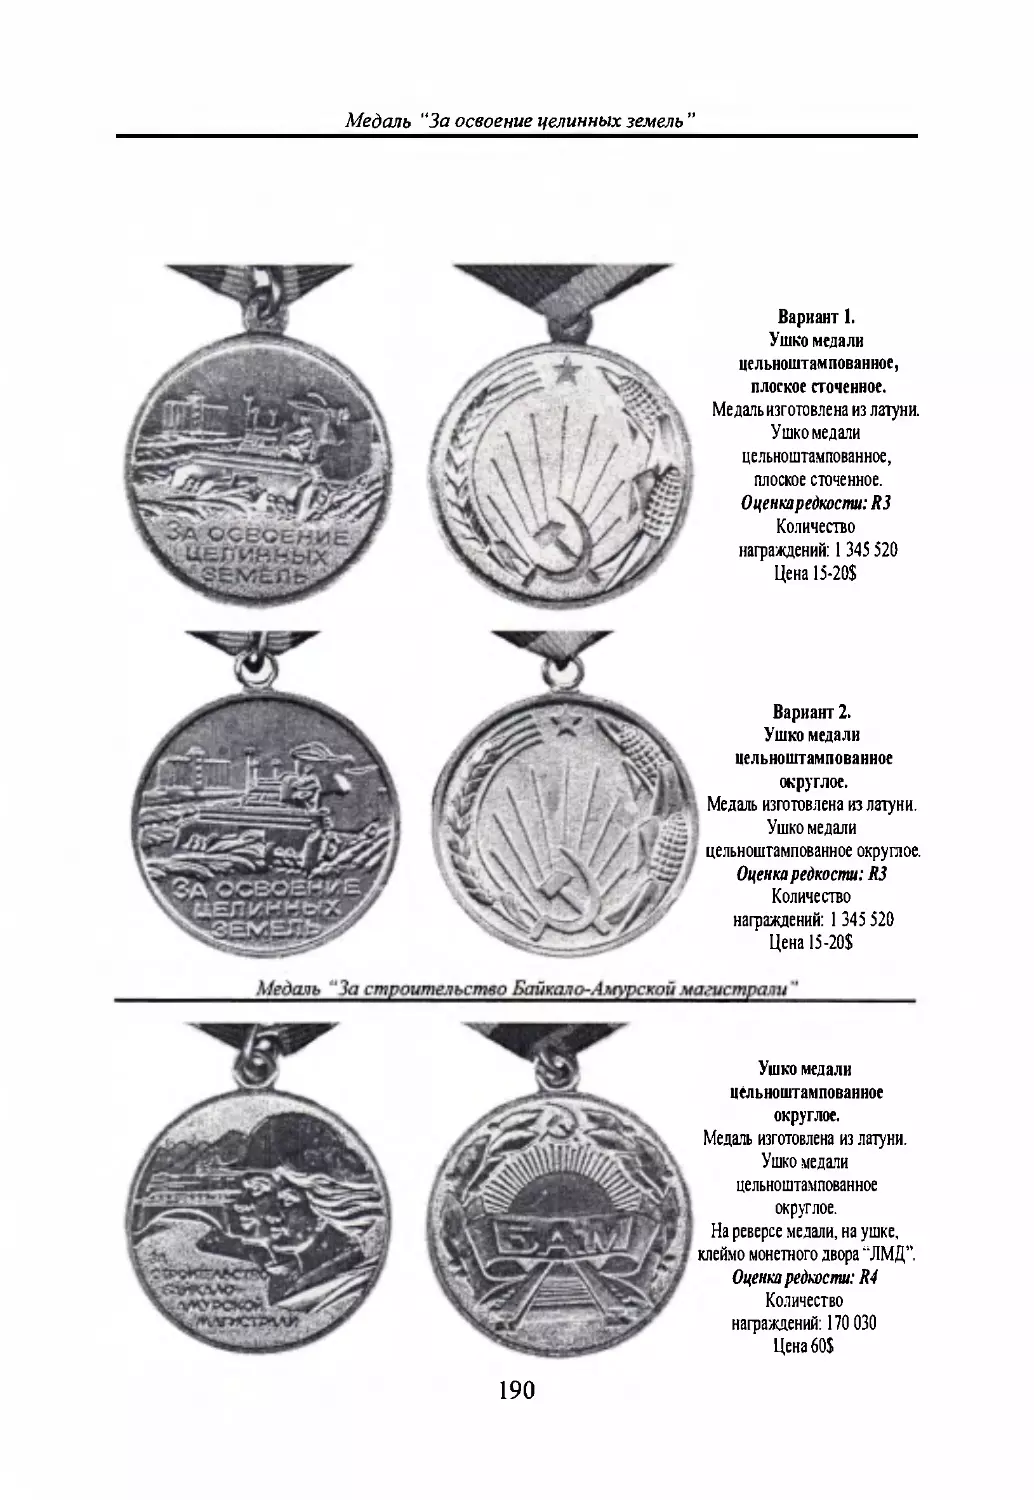 Медаль “За освоение целинных земель”
Медаль “За строительство Байкало-Амурской магистрали